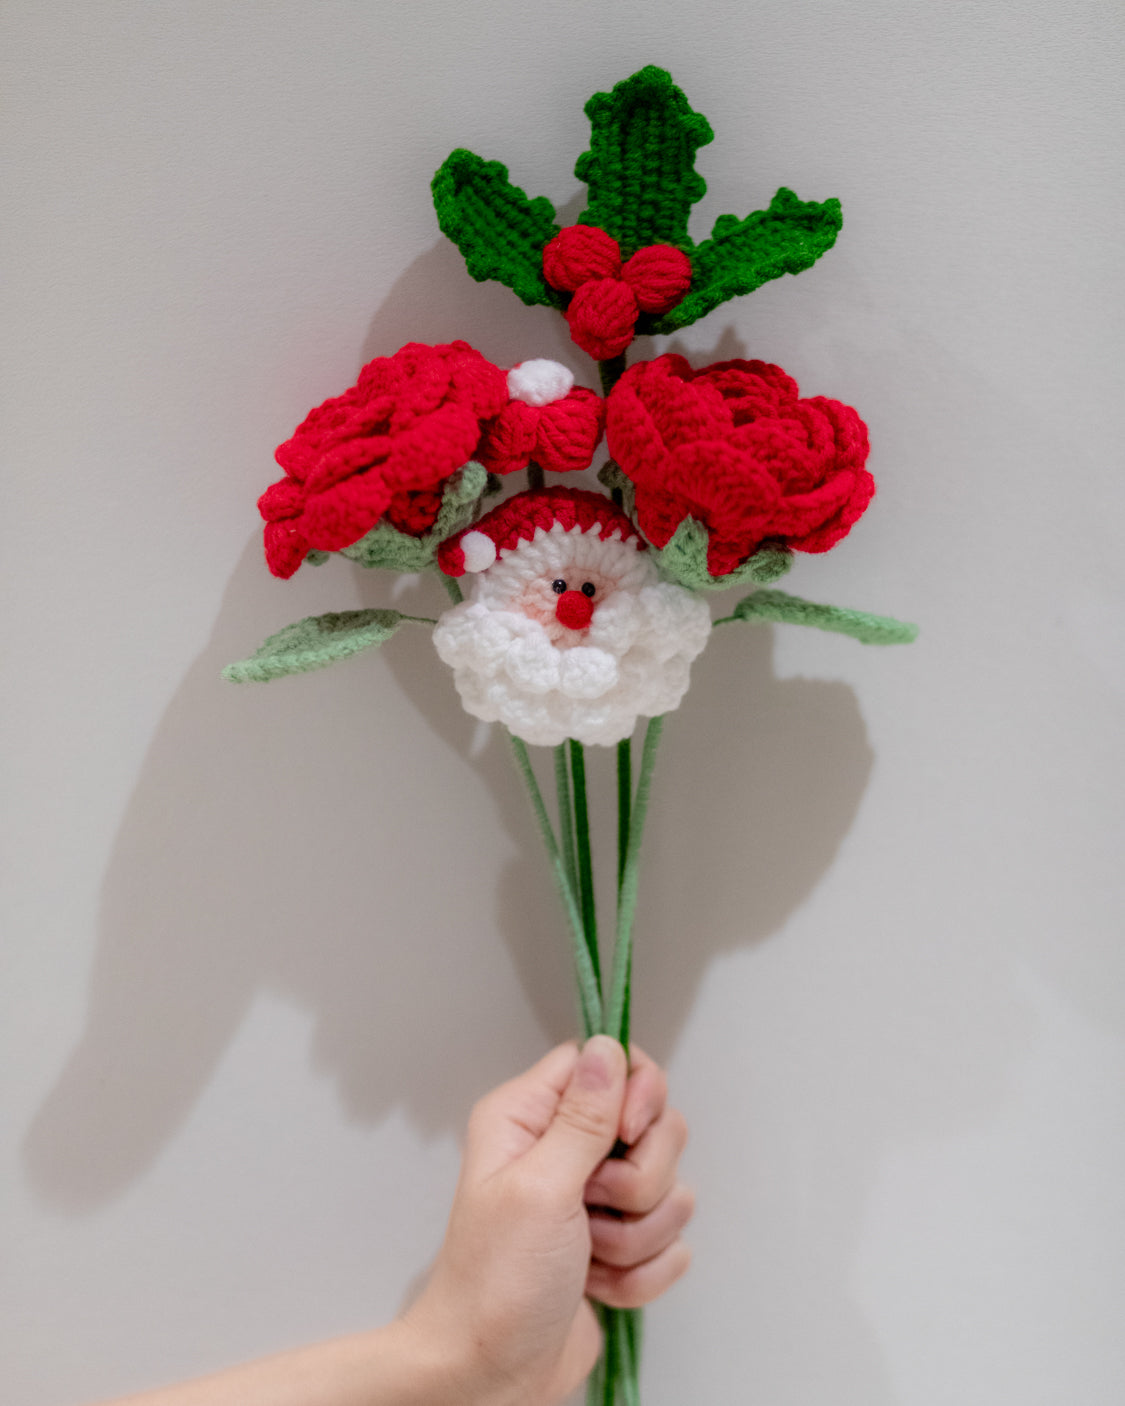 Santa Claus & David Austin Roses Crochet Flower Bouquet